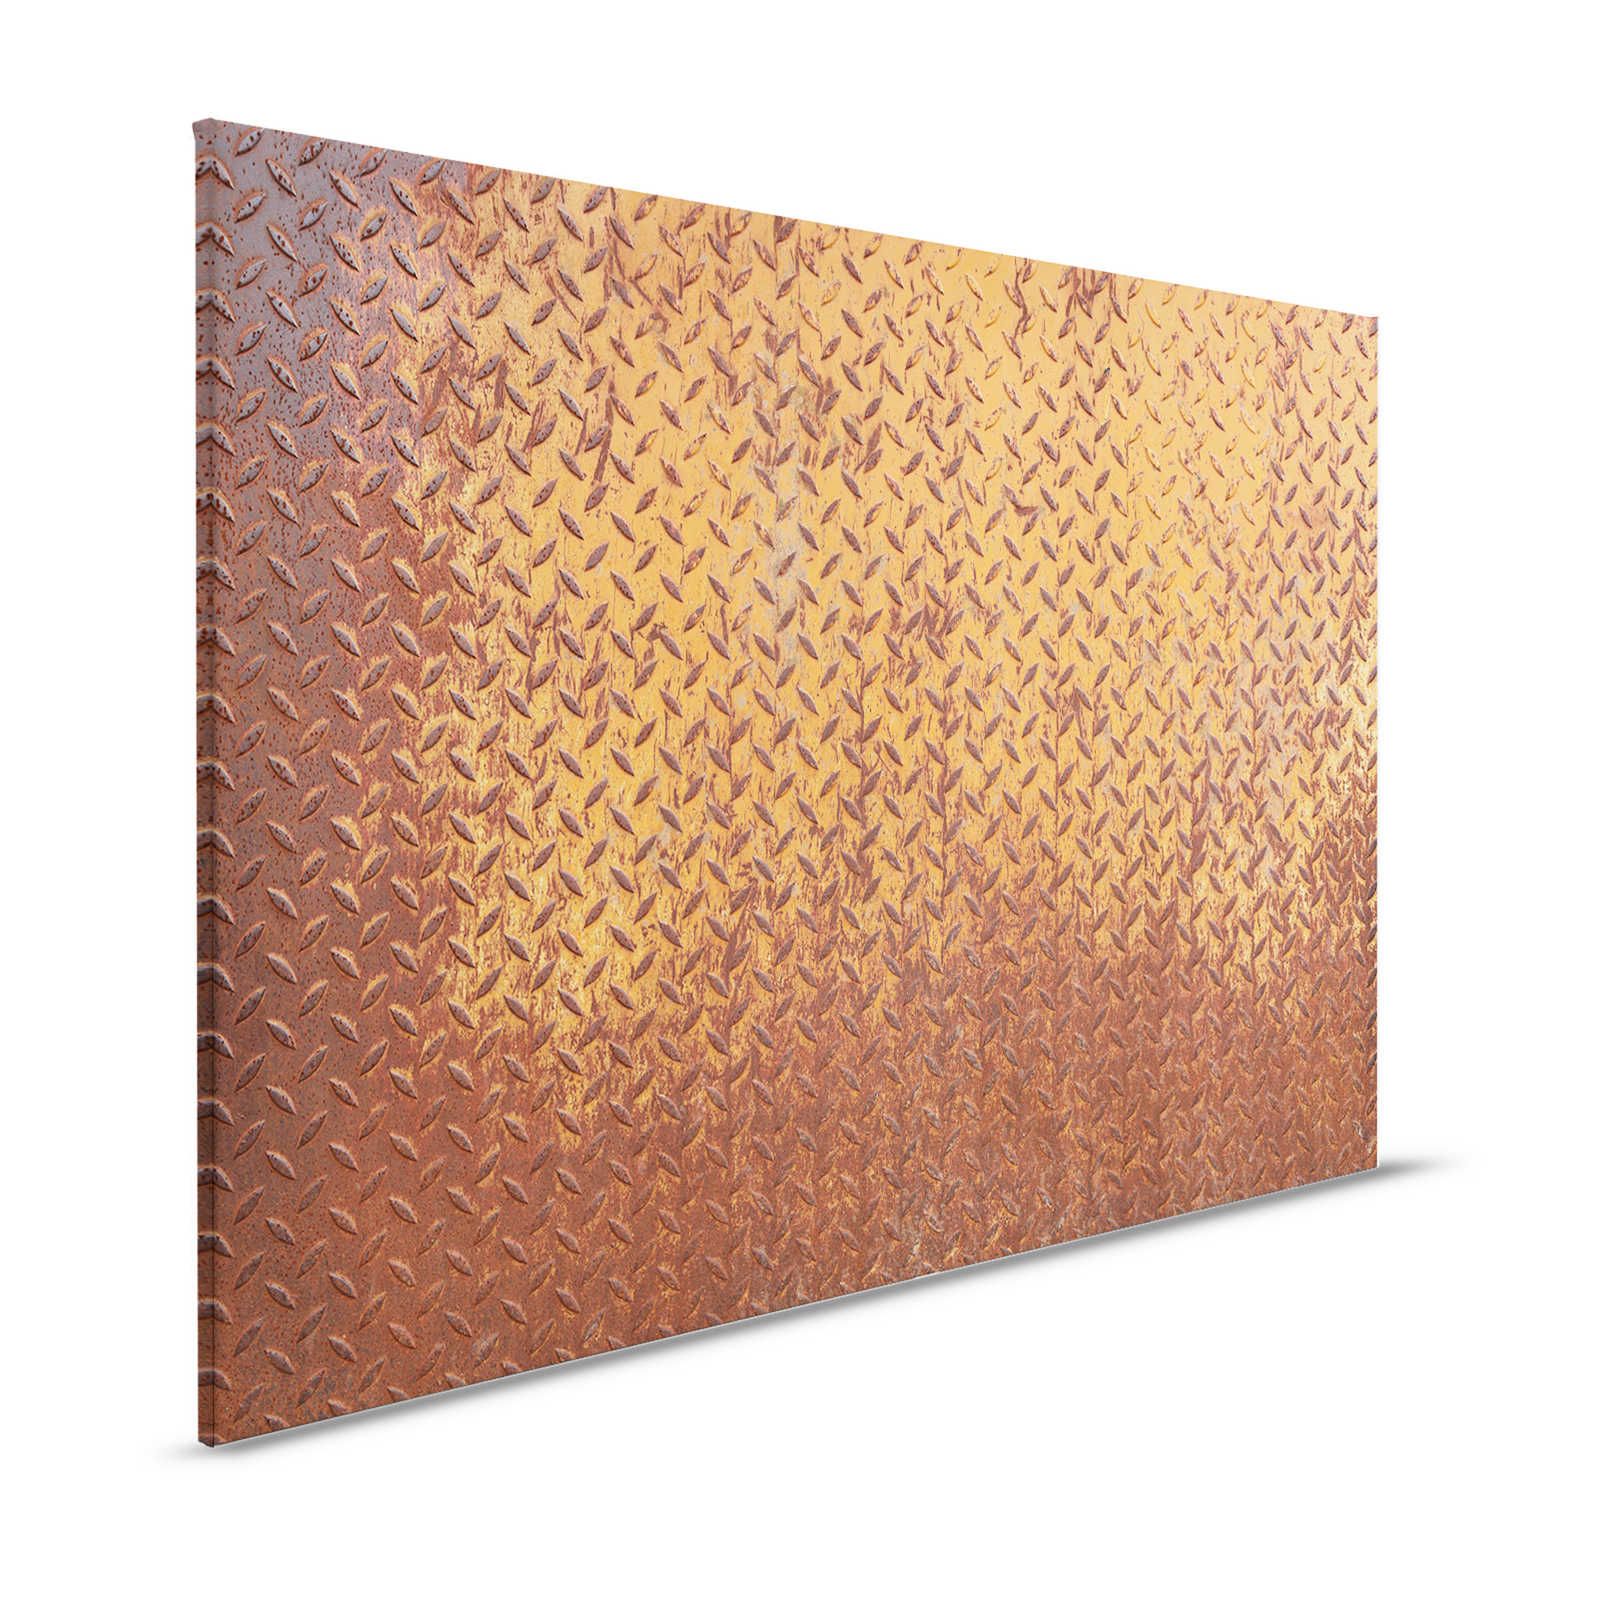 Lienzo metálico Pintura Placa de acero óxido con dibujo de diamantes - 1,20 m x 0,80 m
